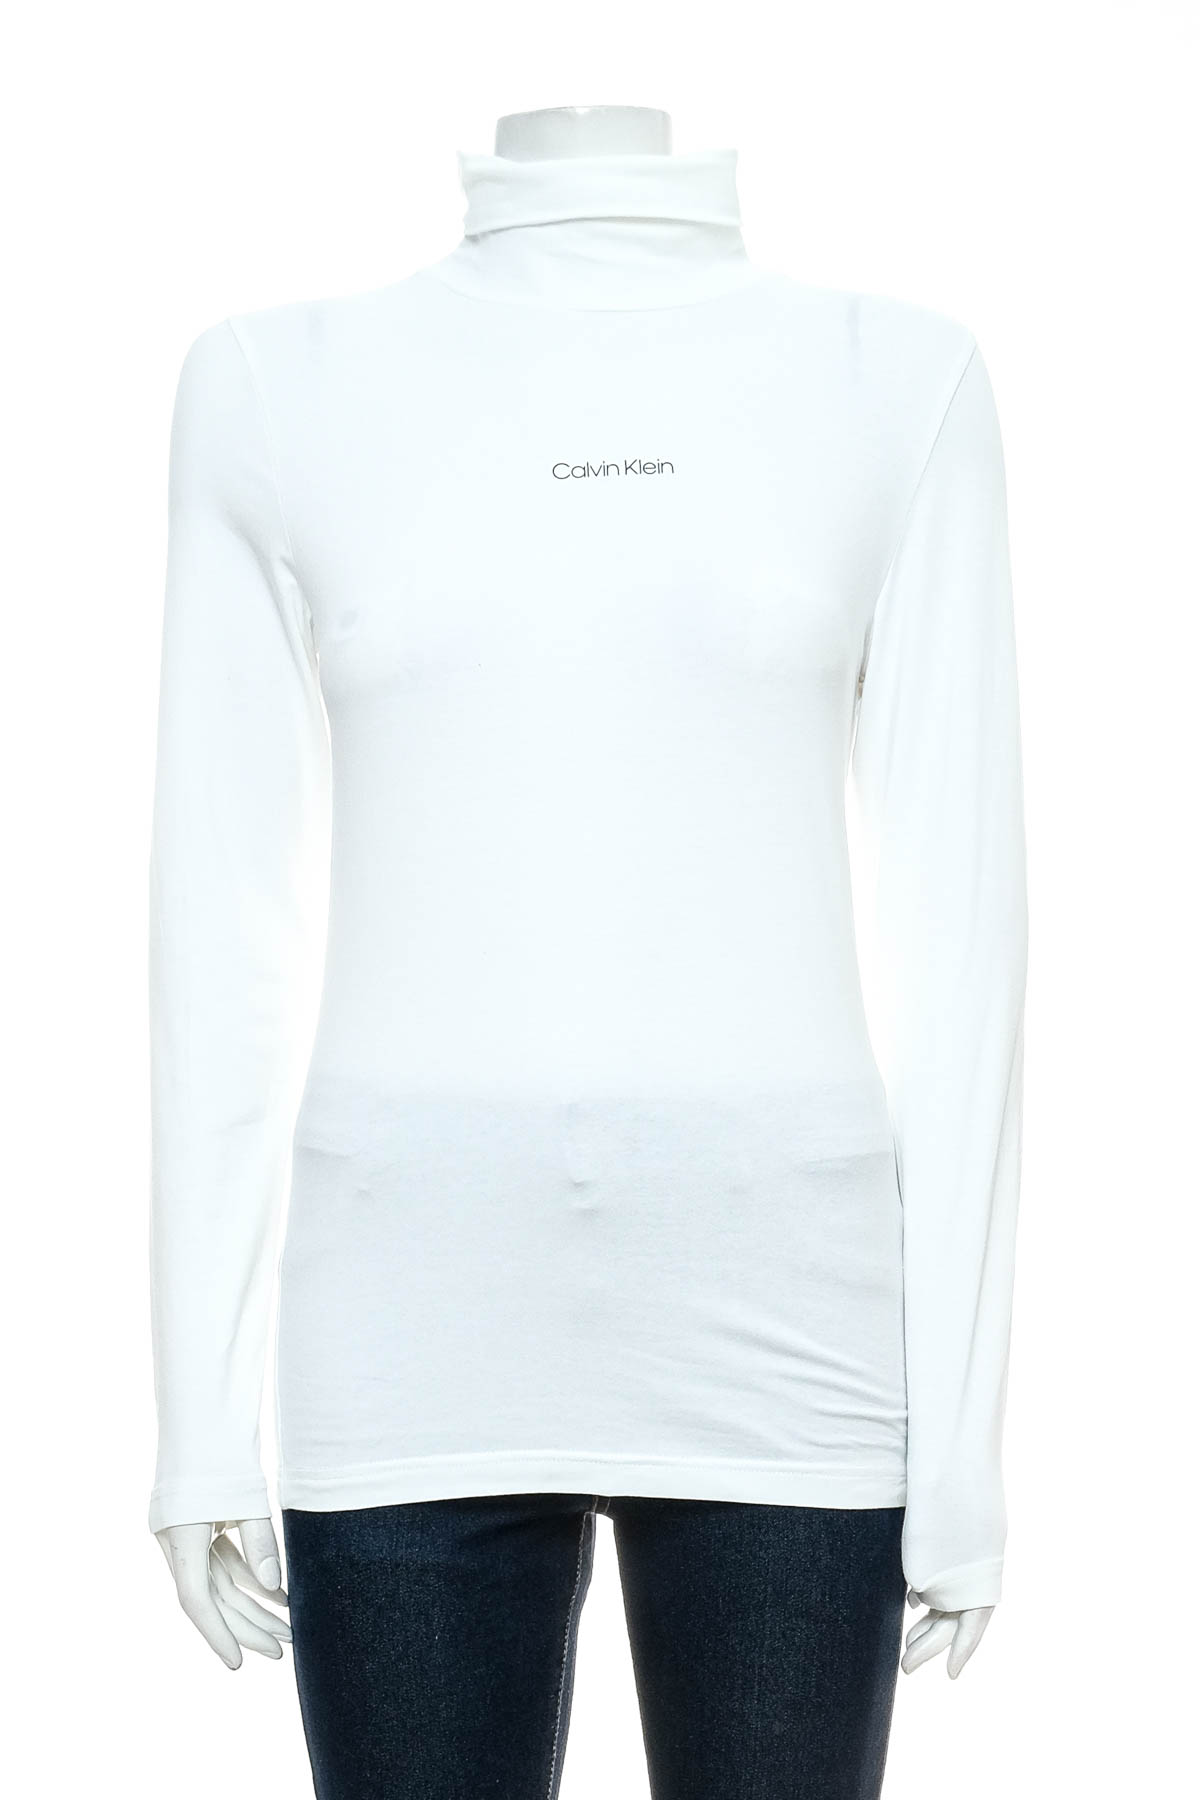 Γυναικεία μπλούζα - Calvin Klein - 0